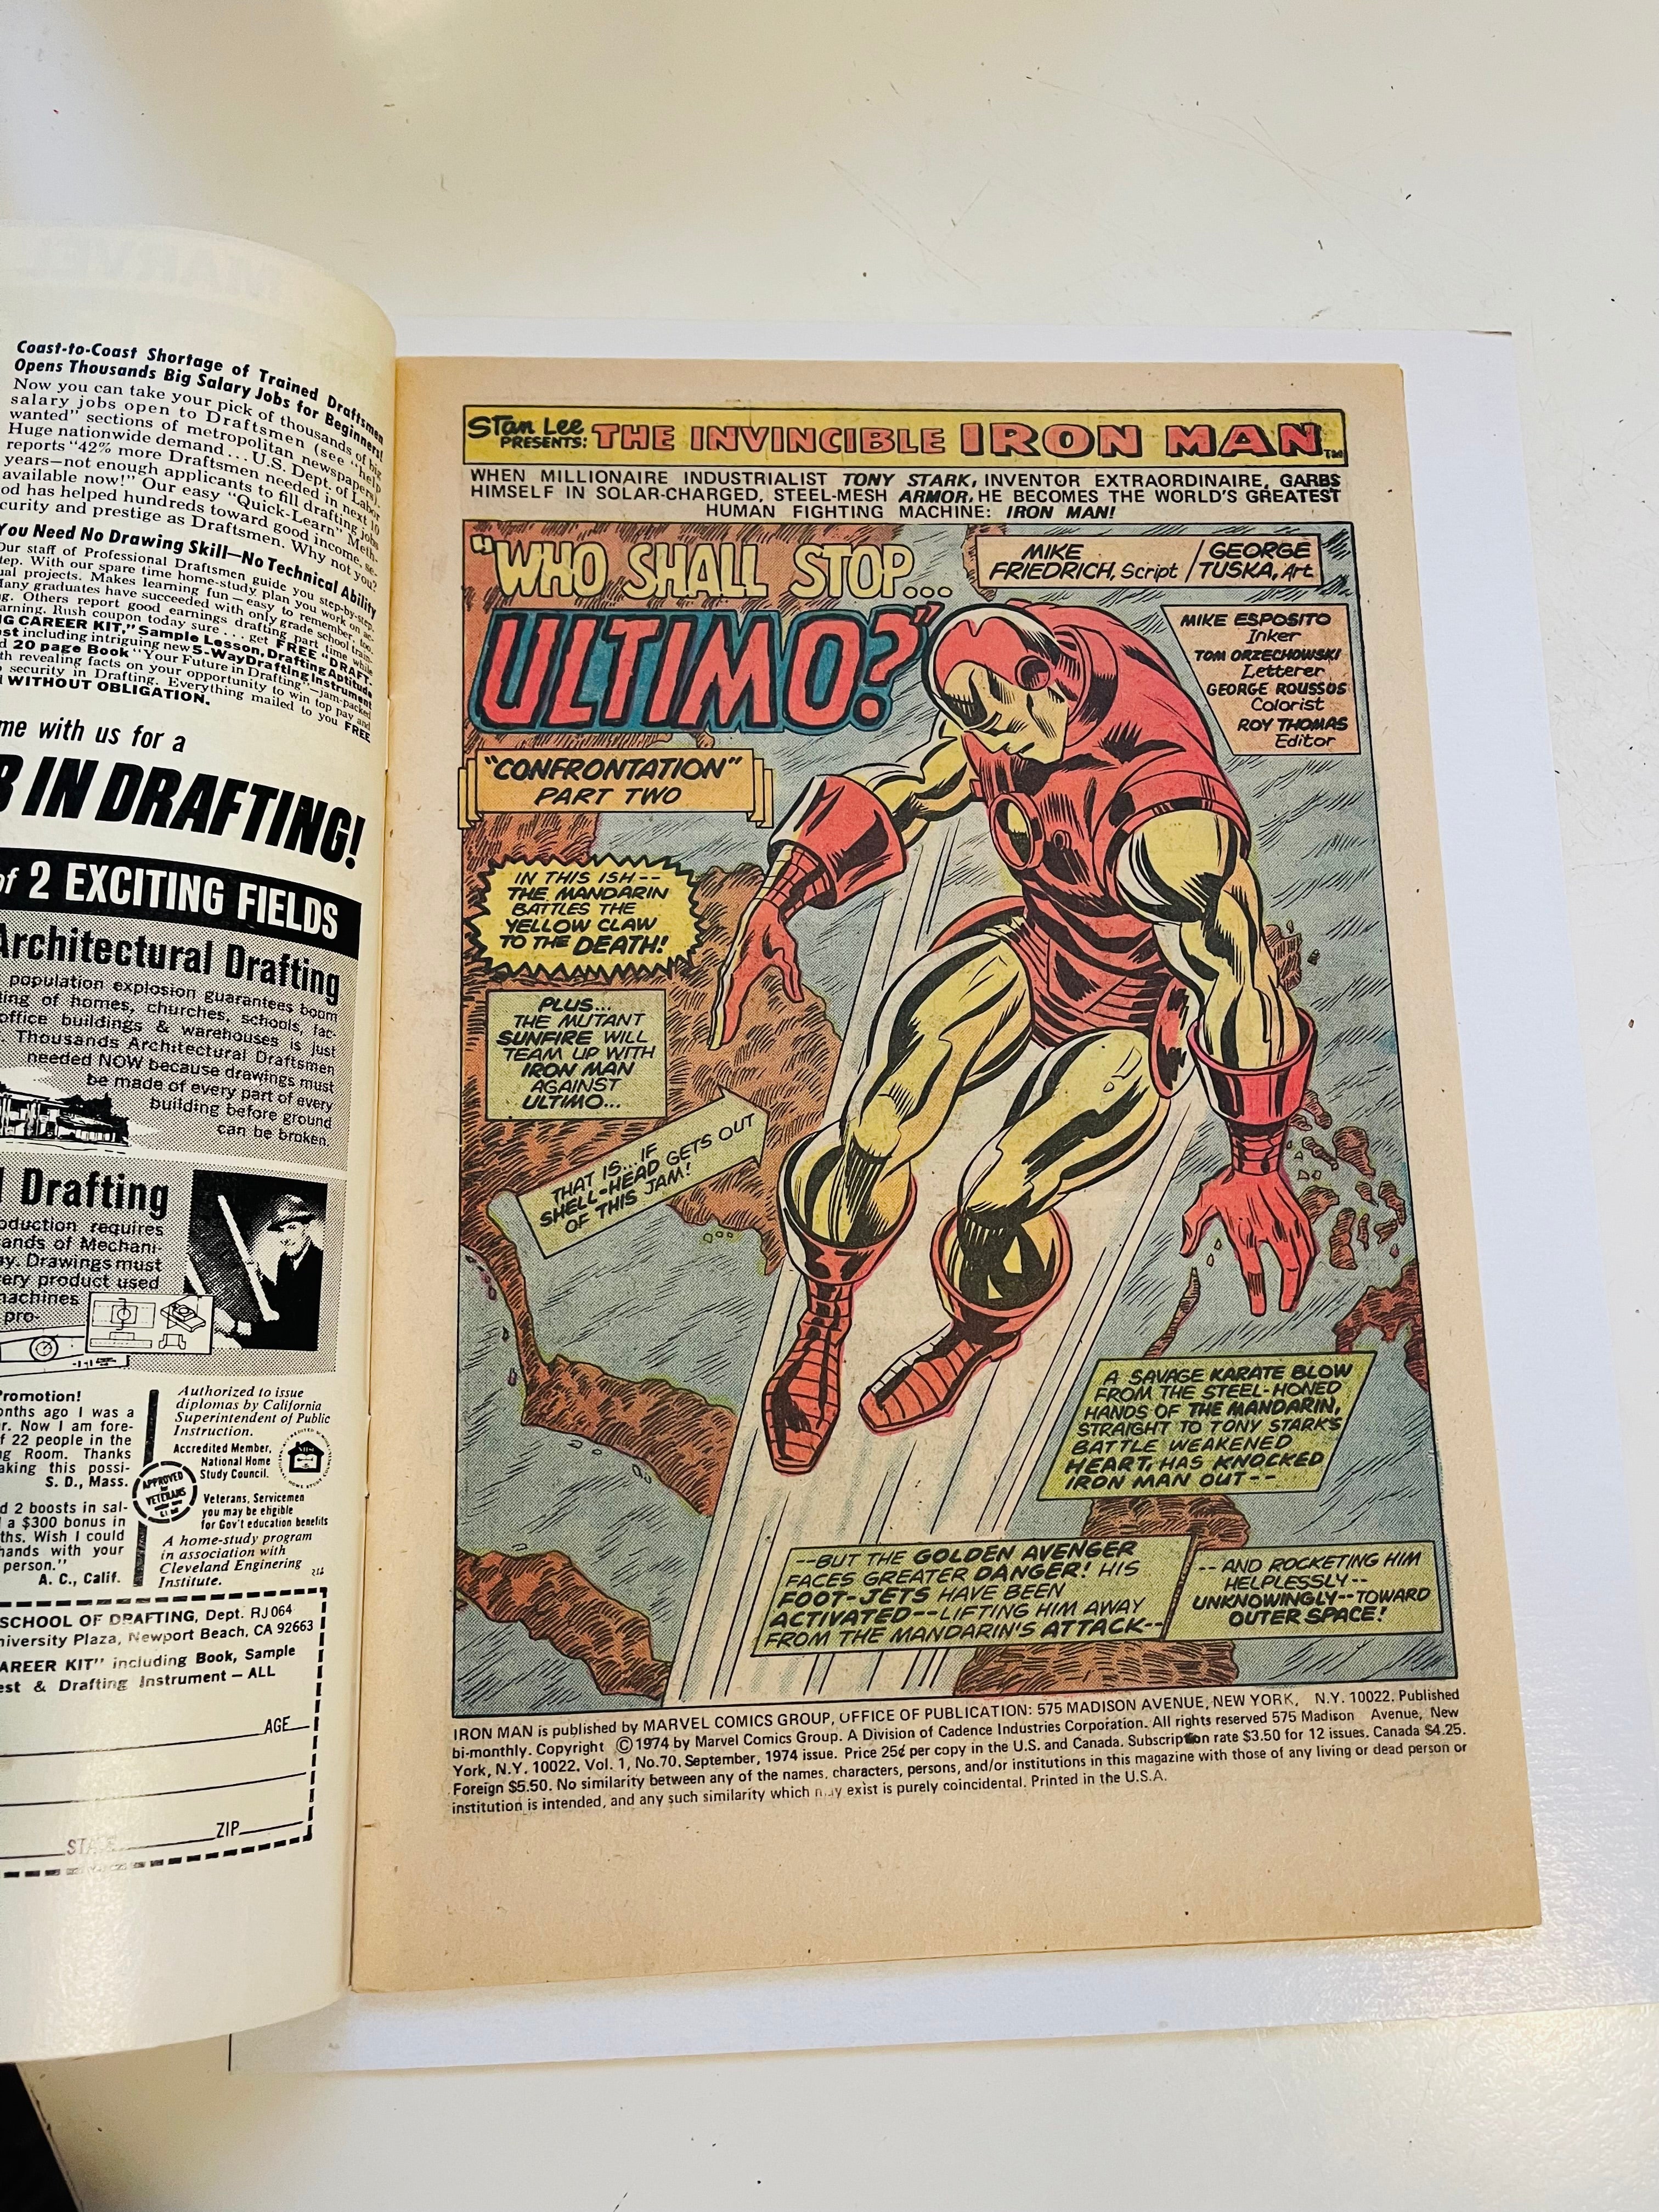 Iron Man #70 high grade VF condition comic book